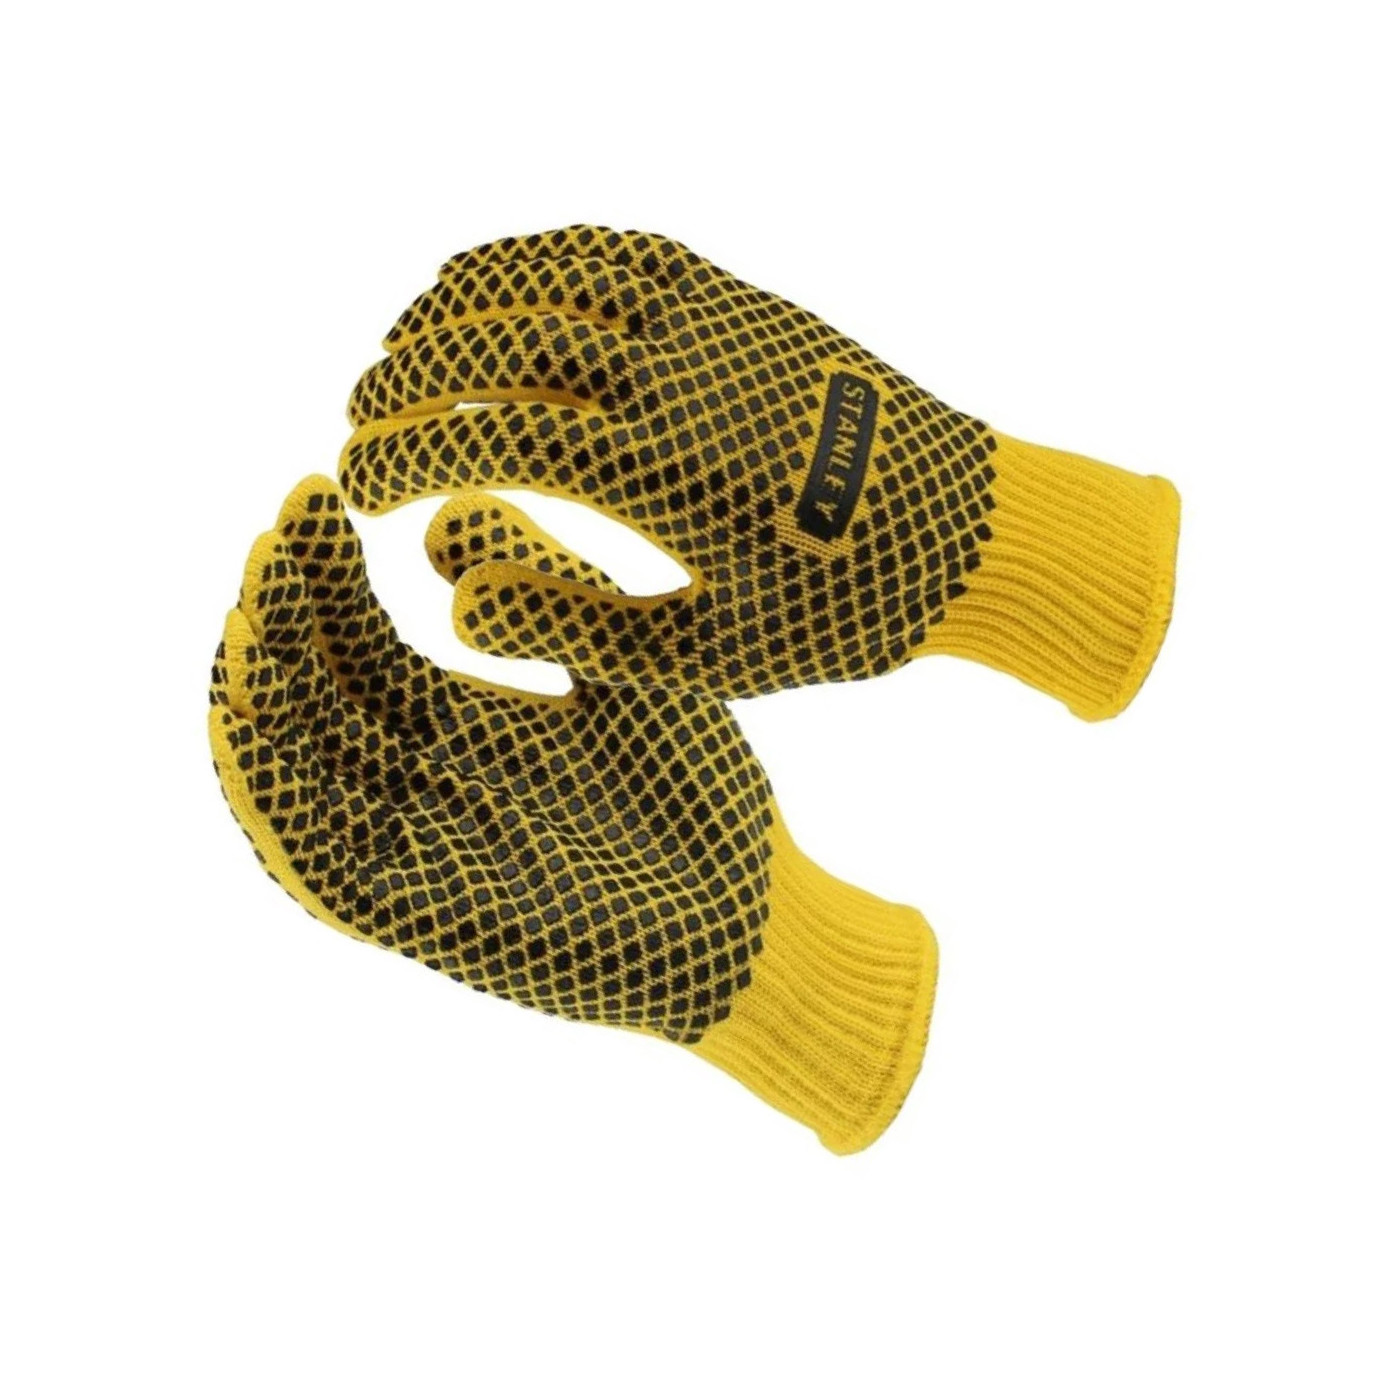 Juego de guantes de trabajo Stanley (amarillo/negro)